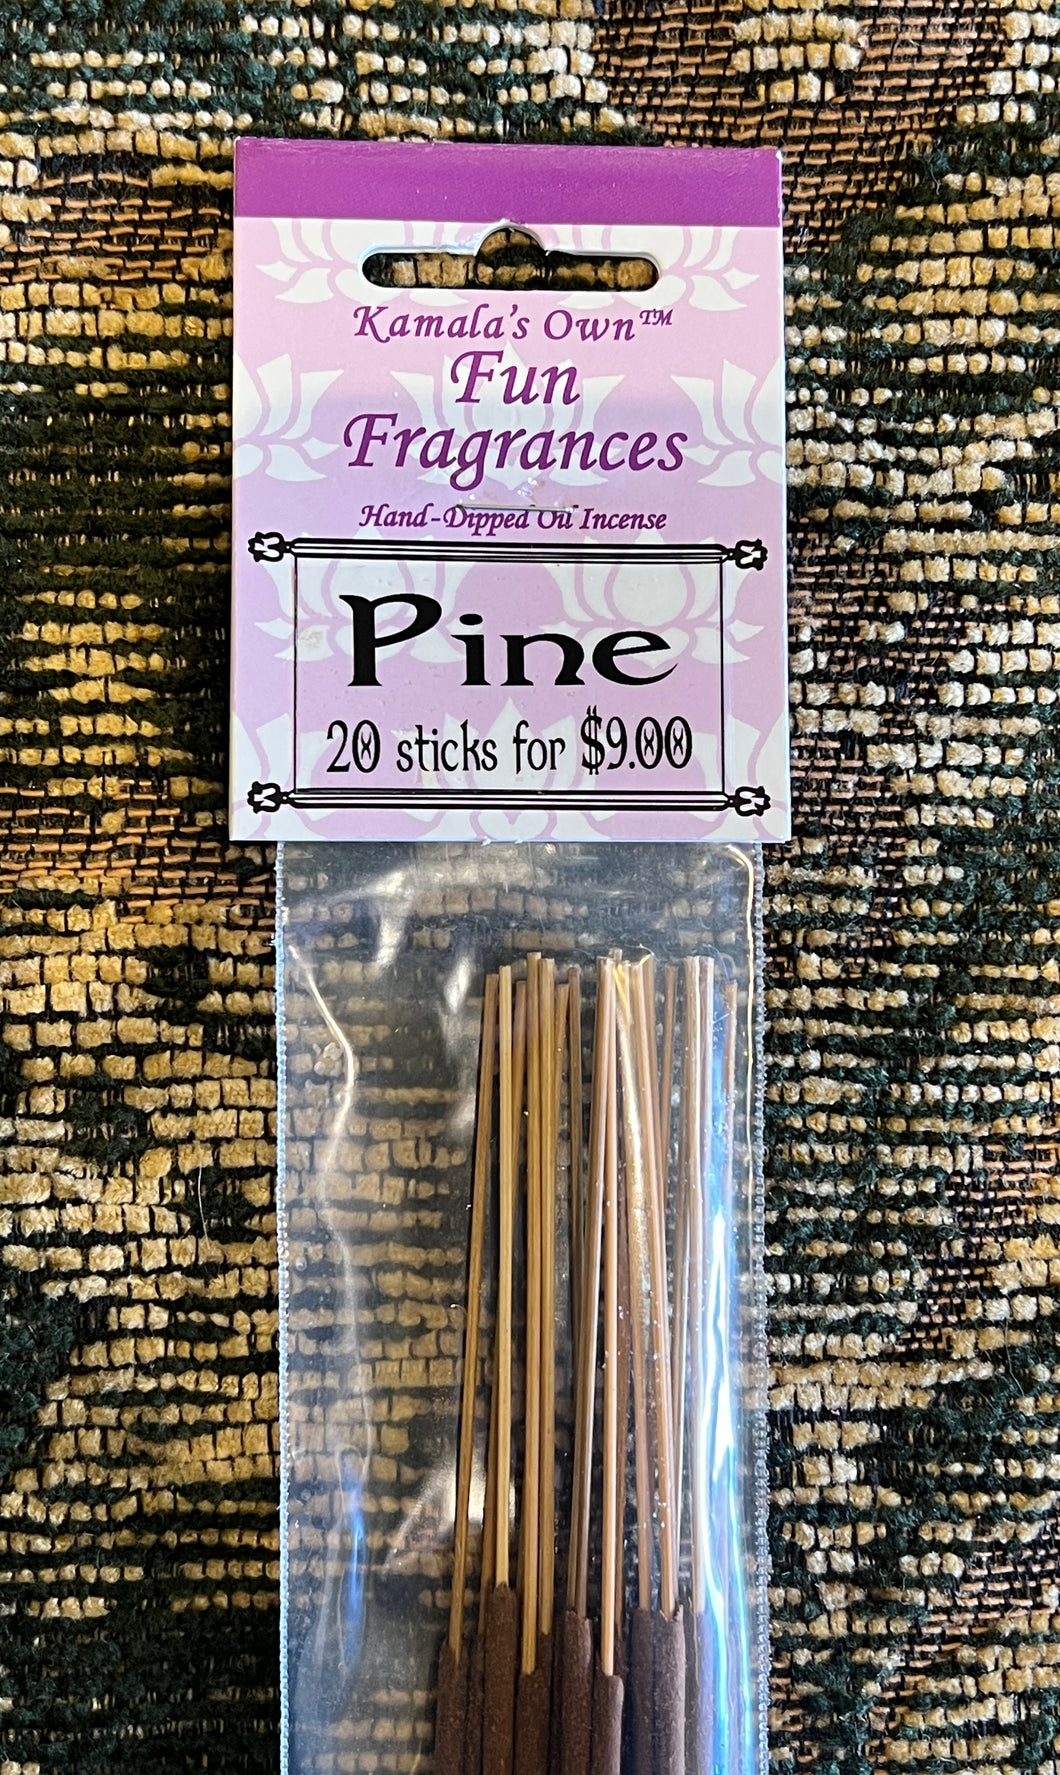 Pine sticks